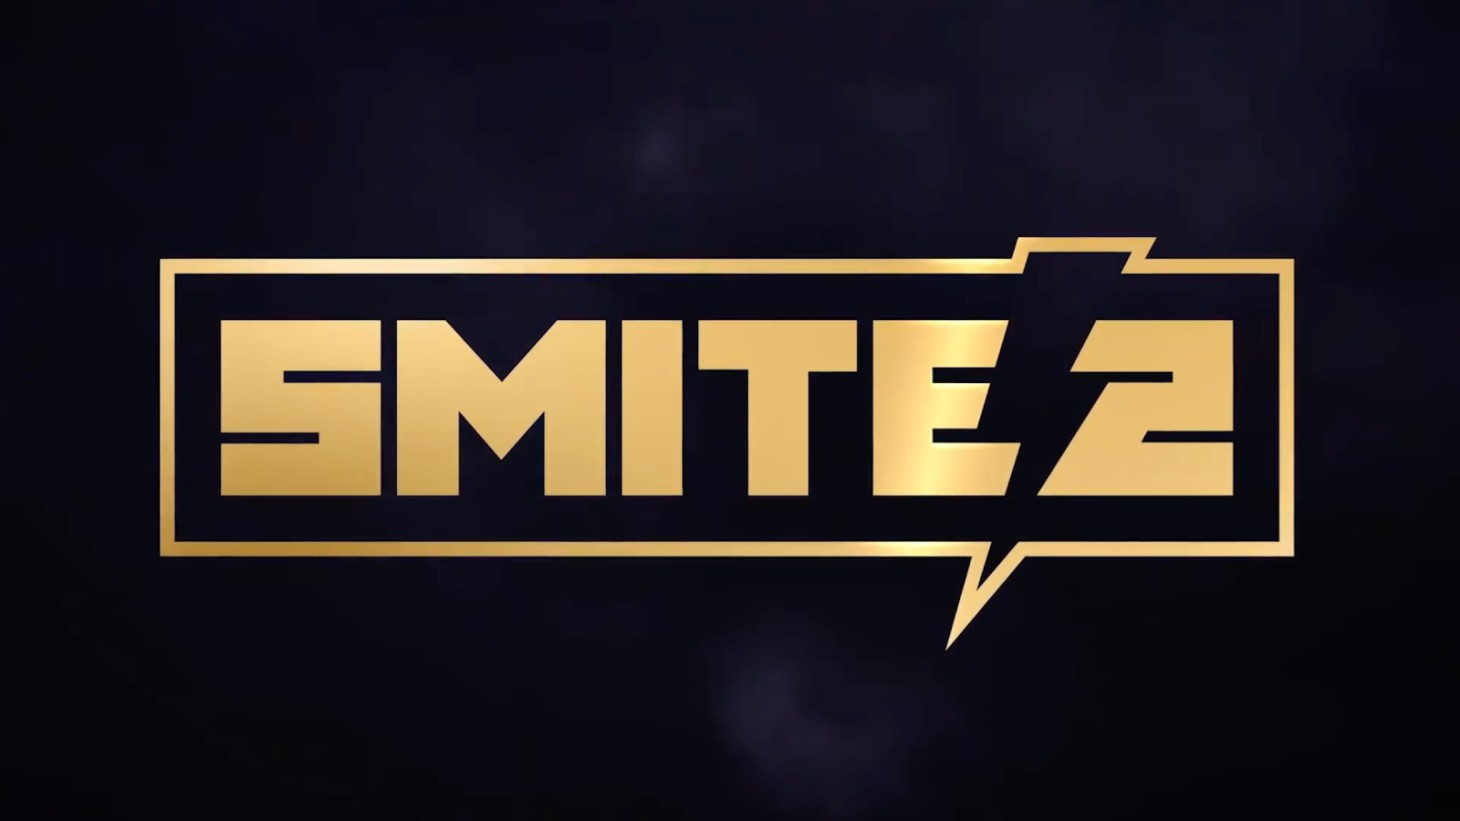 Smite 2 ist ein Unreal Engine 5 Sequel zu Smite, der Alpha-Test beginnt diesen Frühling